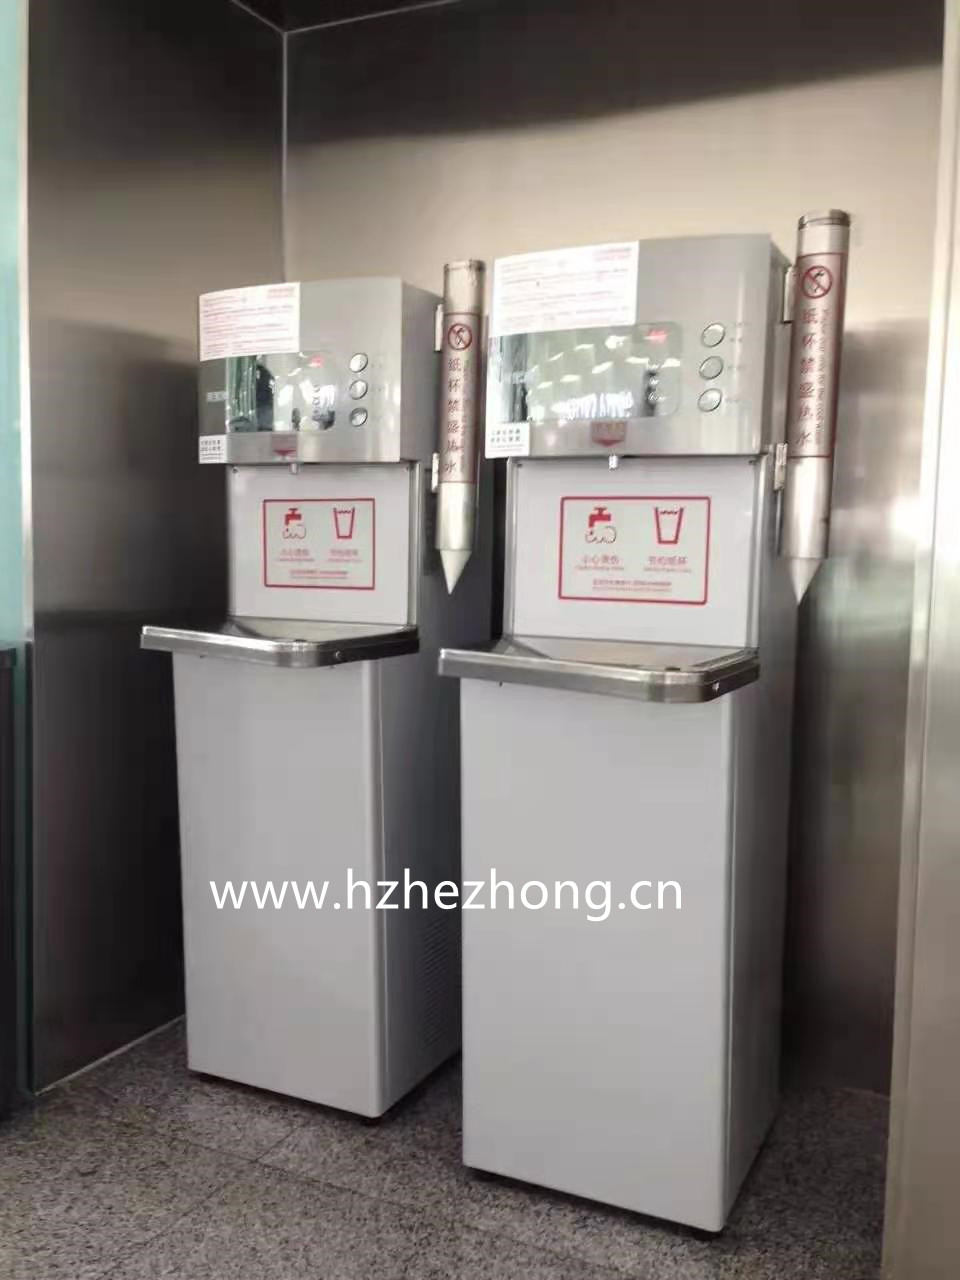 Shenzhen Bao 'an International Airport chose ACUO brand water dispenser